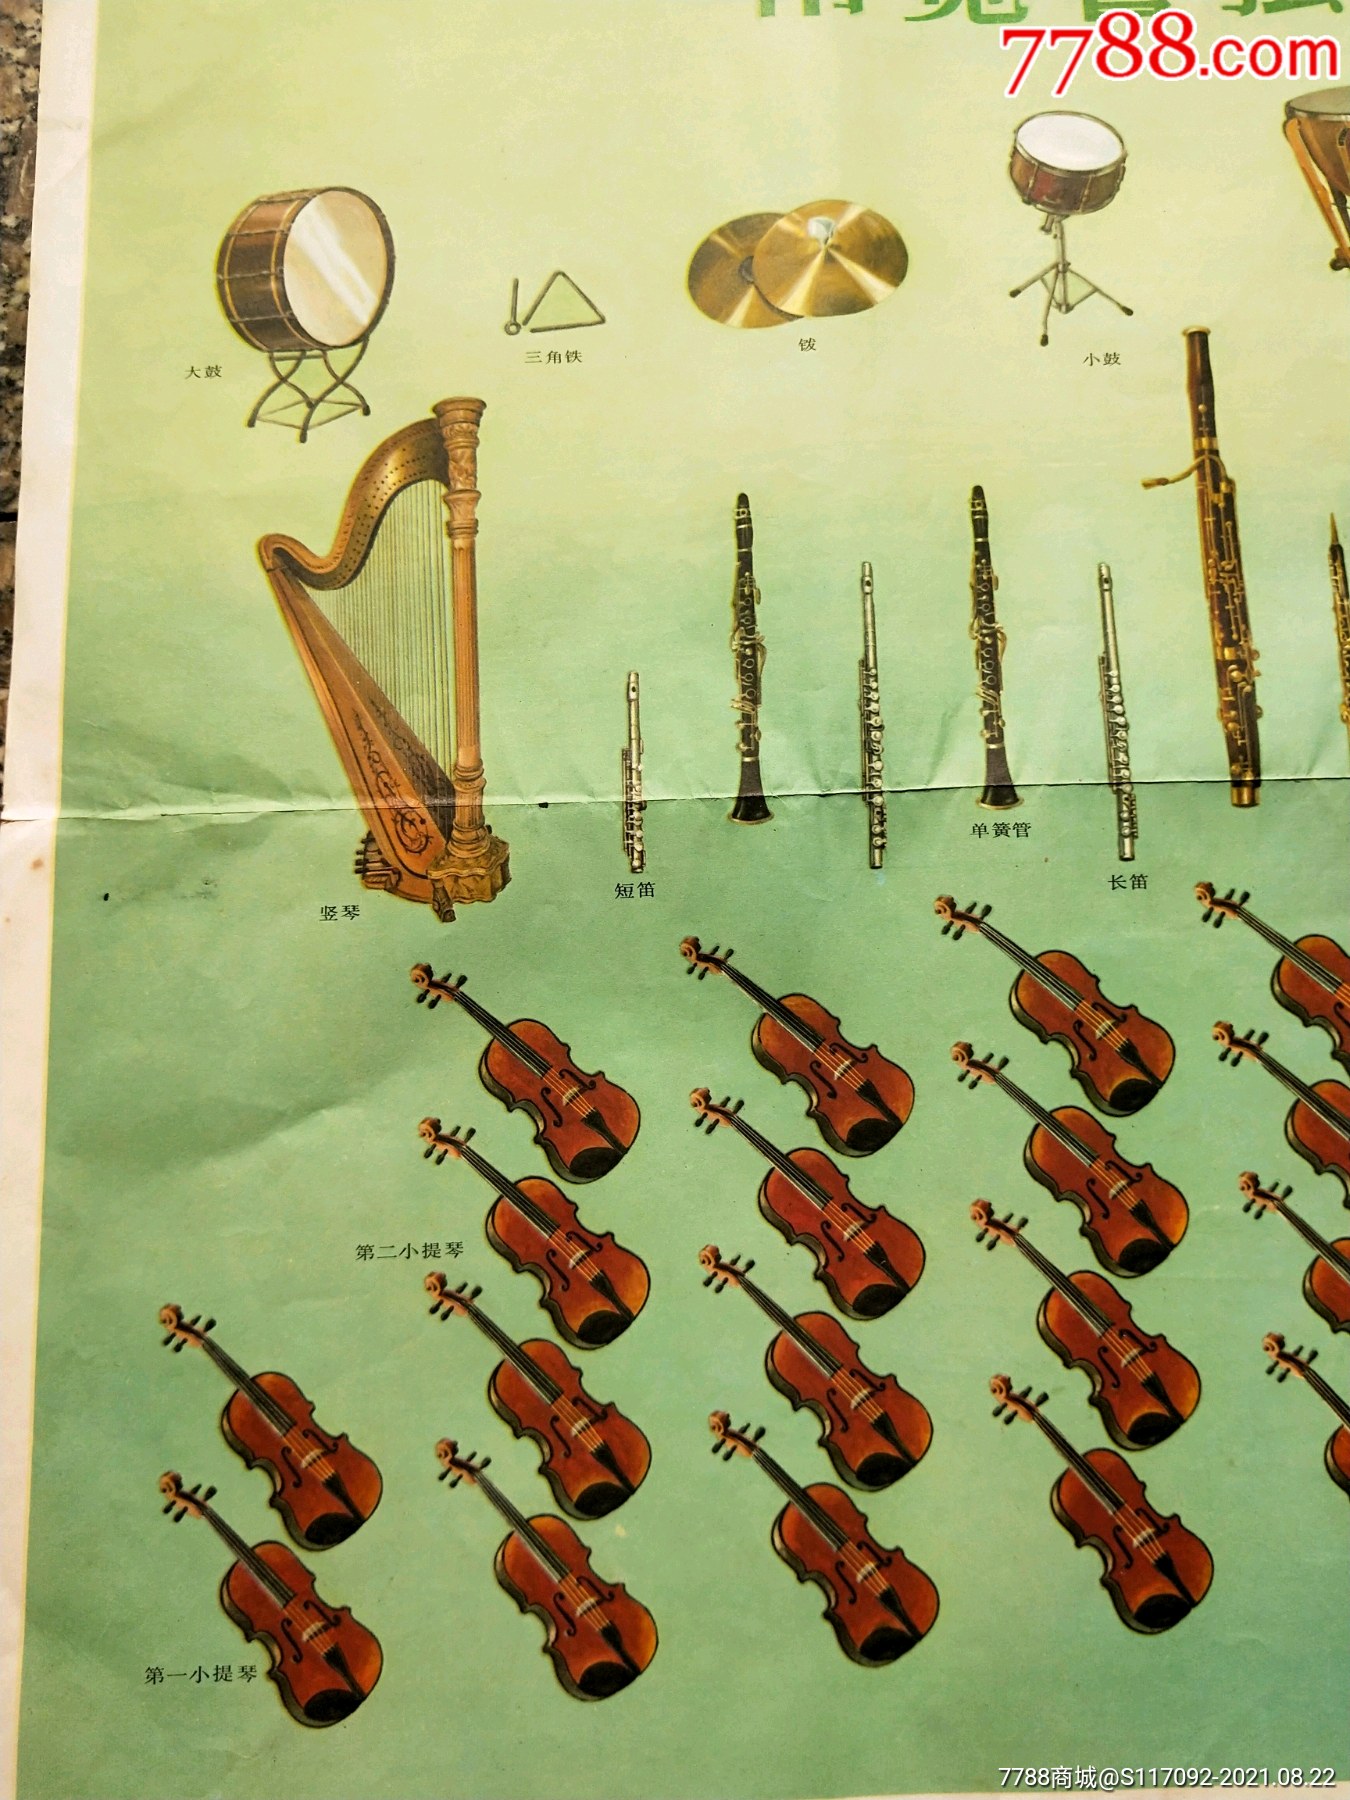 管弦乐队的乐器排列图图片